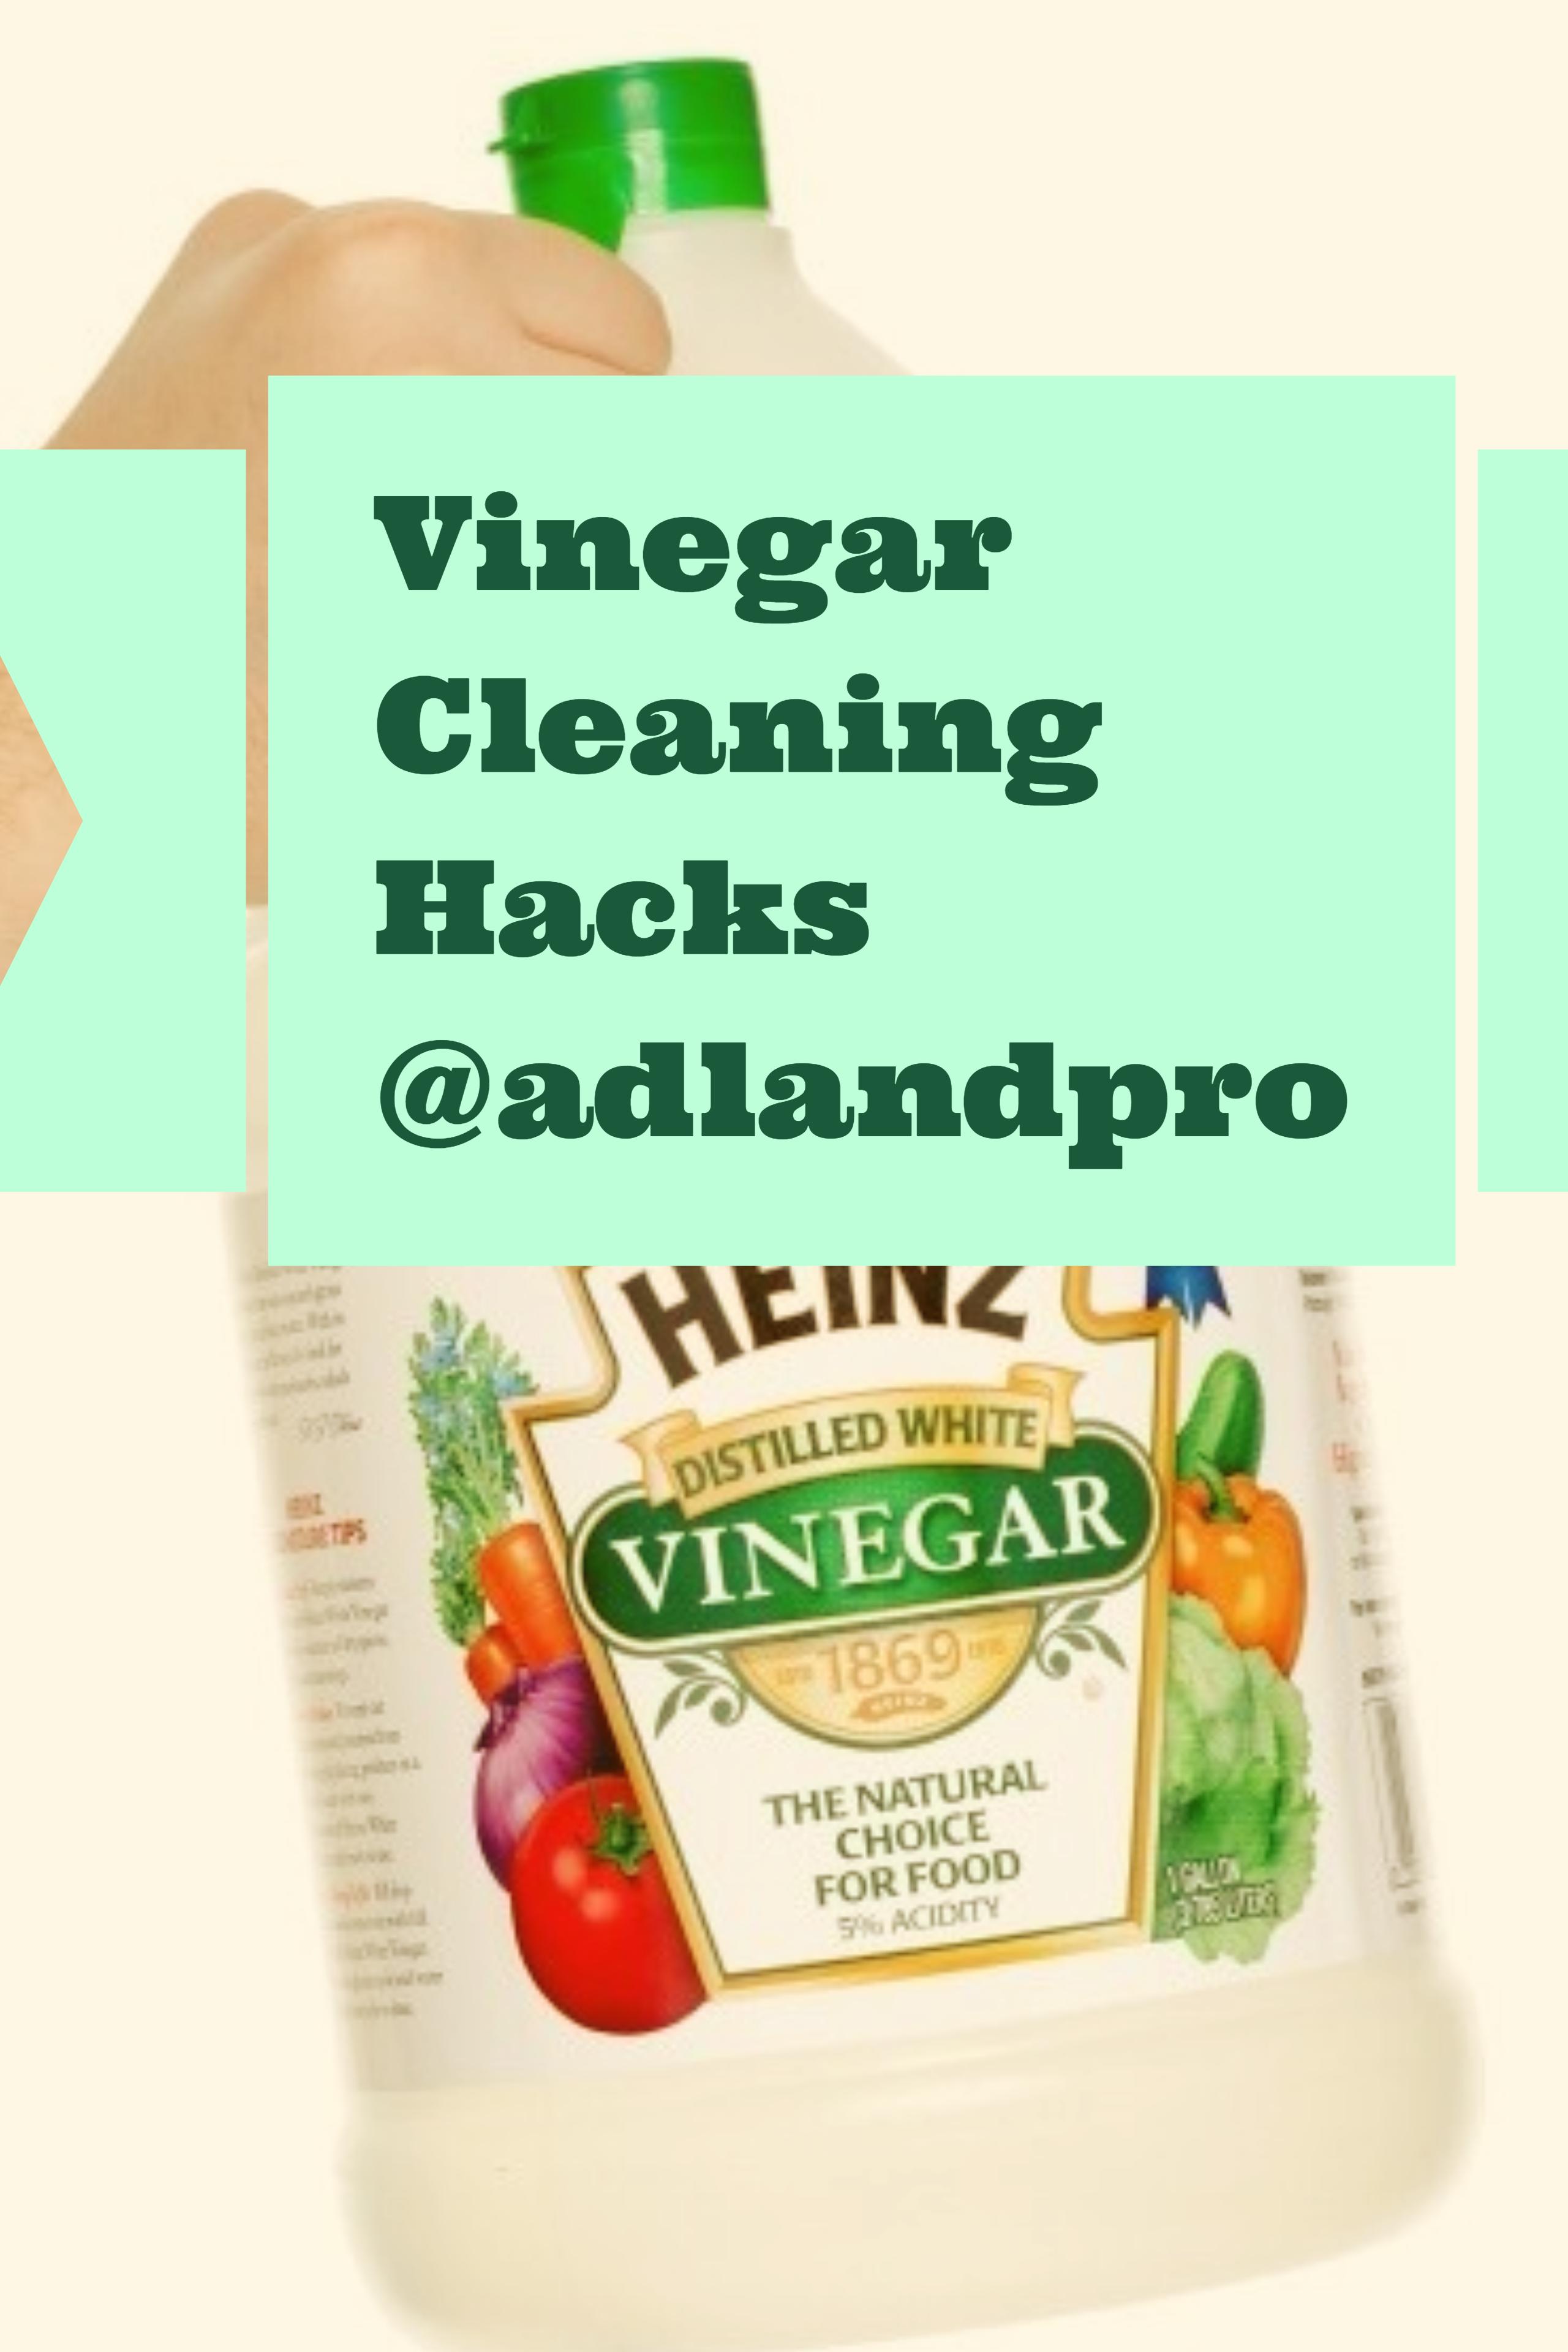 adlandpro-vinegar-cleaning hacks1jpg.jpg